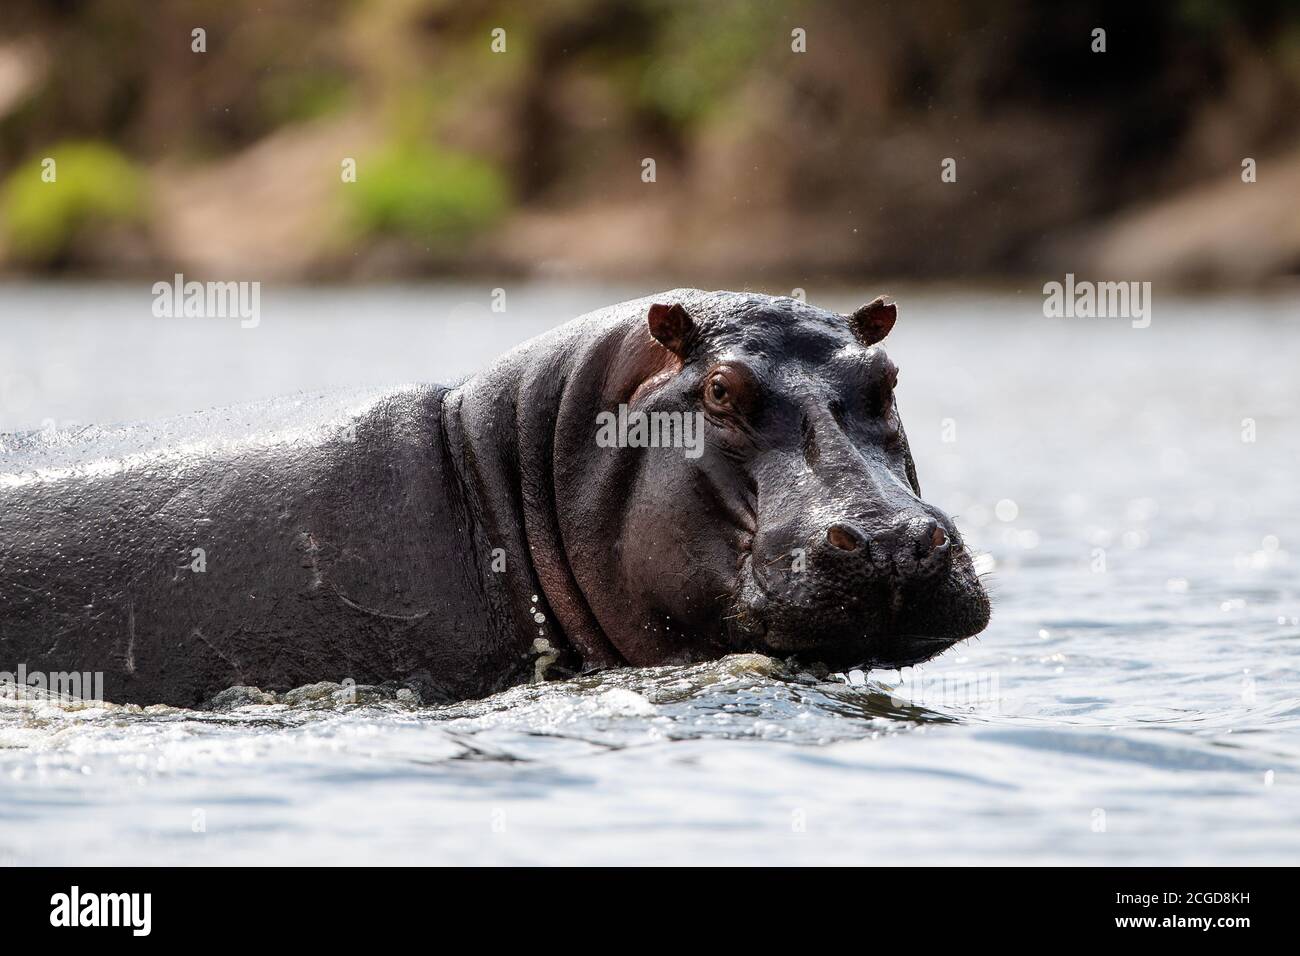 Hippopotamus commun africain (Hippopotamus amphibius) dans la rivière Talek, réserve de Masai Mara, Kenya, afrique de l'est Banque D'Images